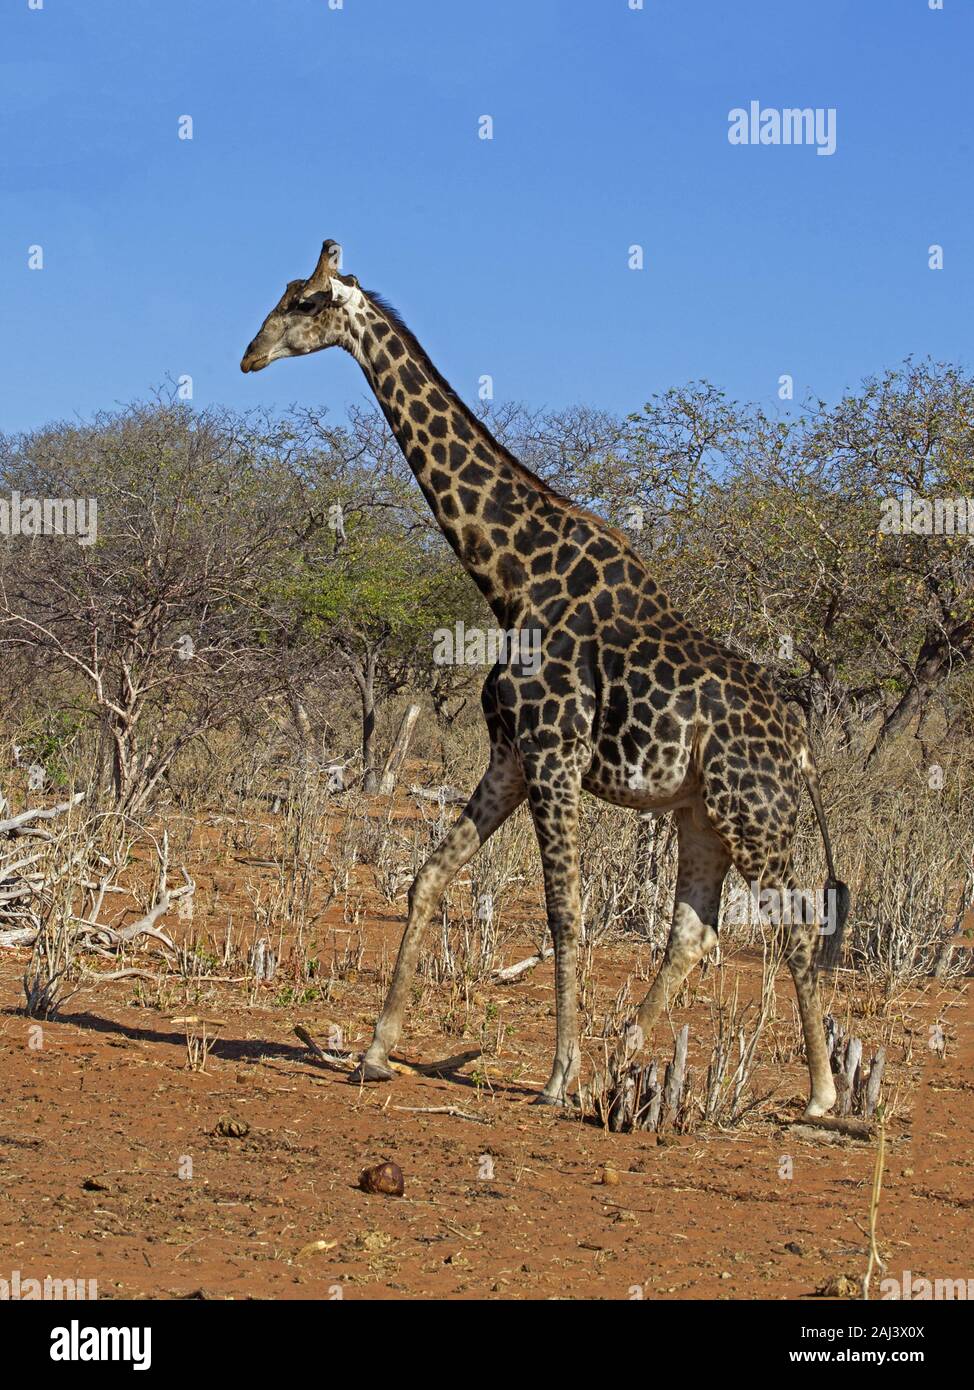 Namibian giraffe standing Stock Photo